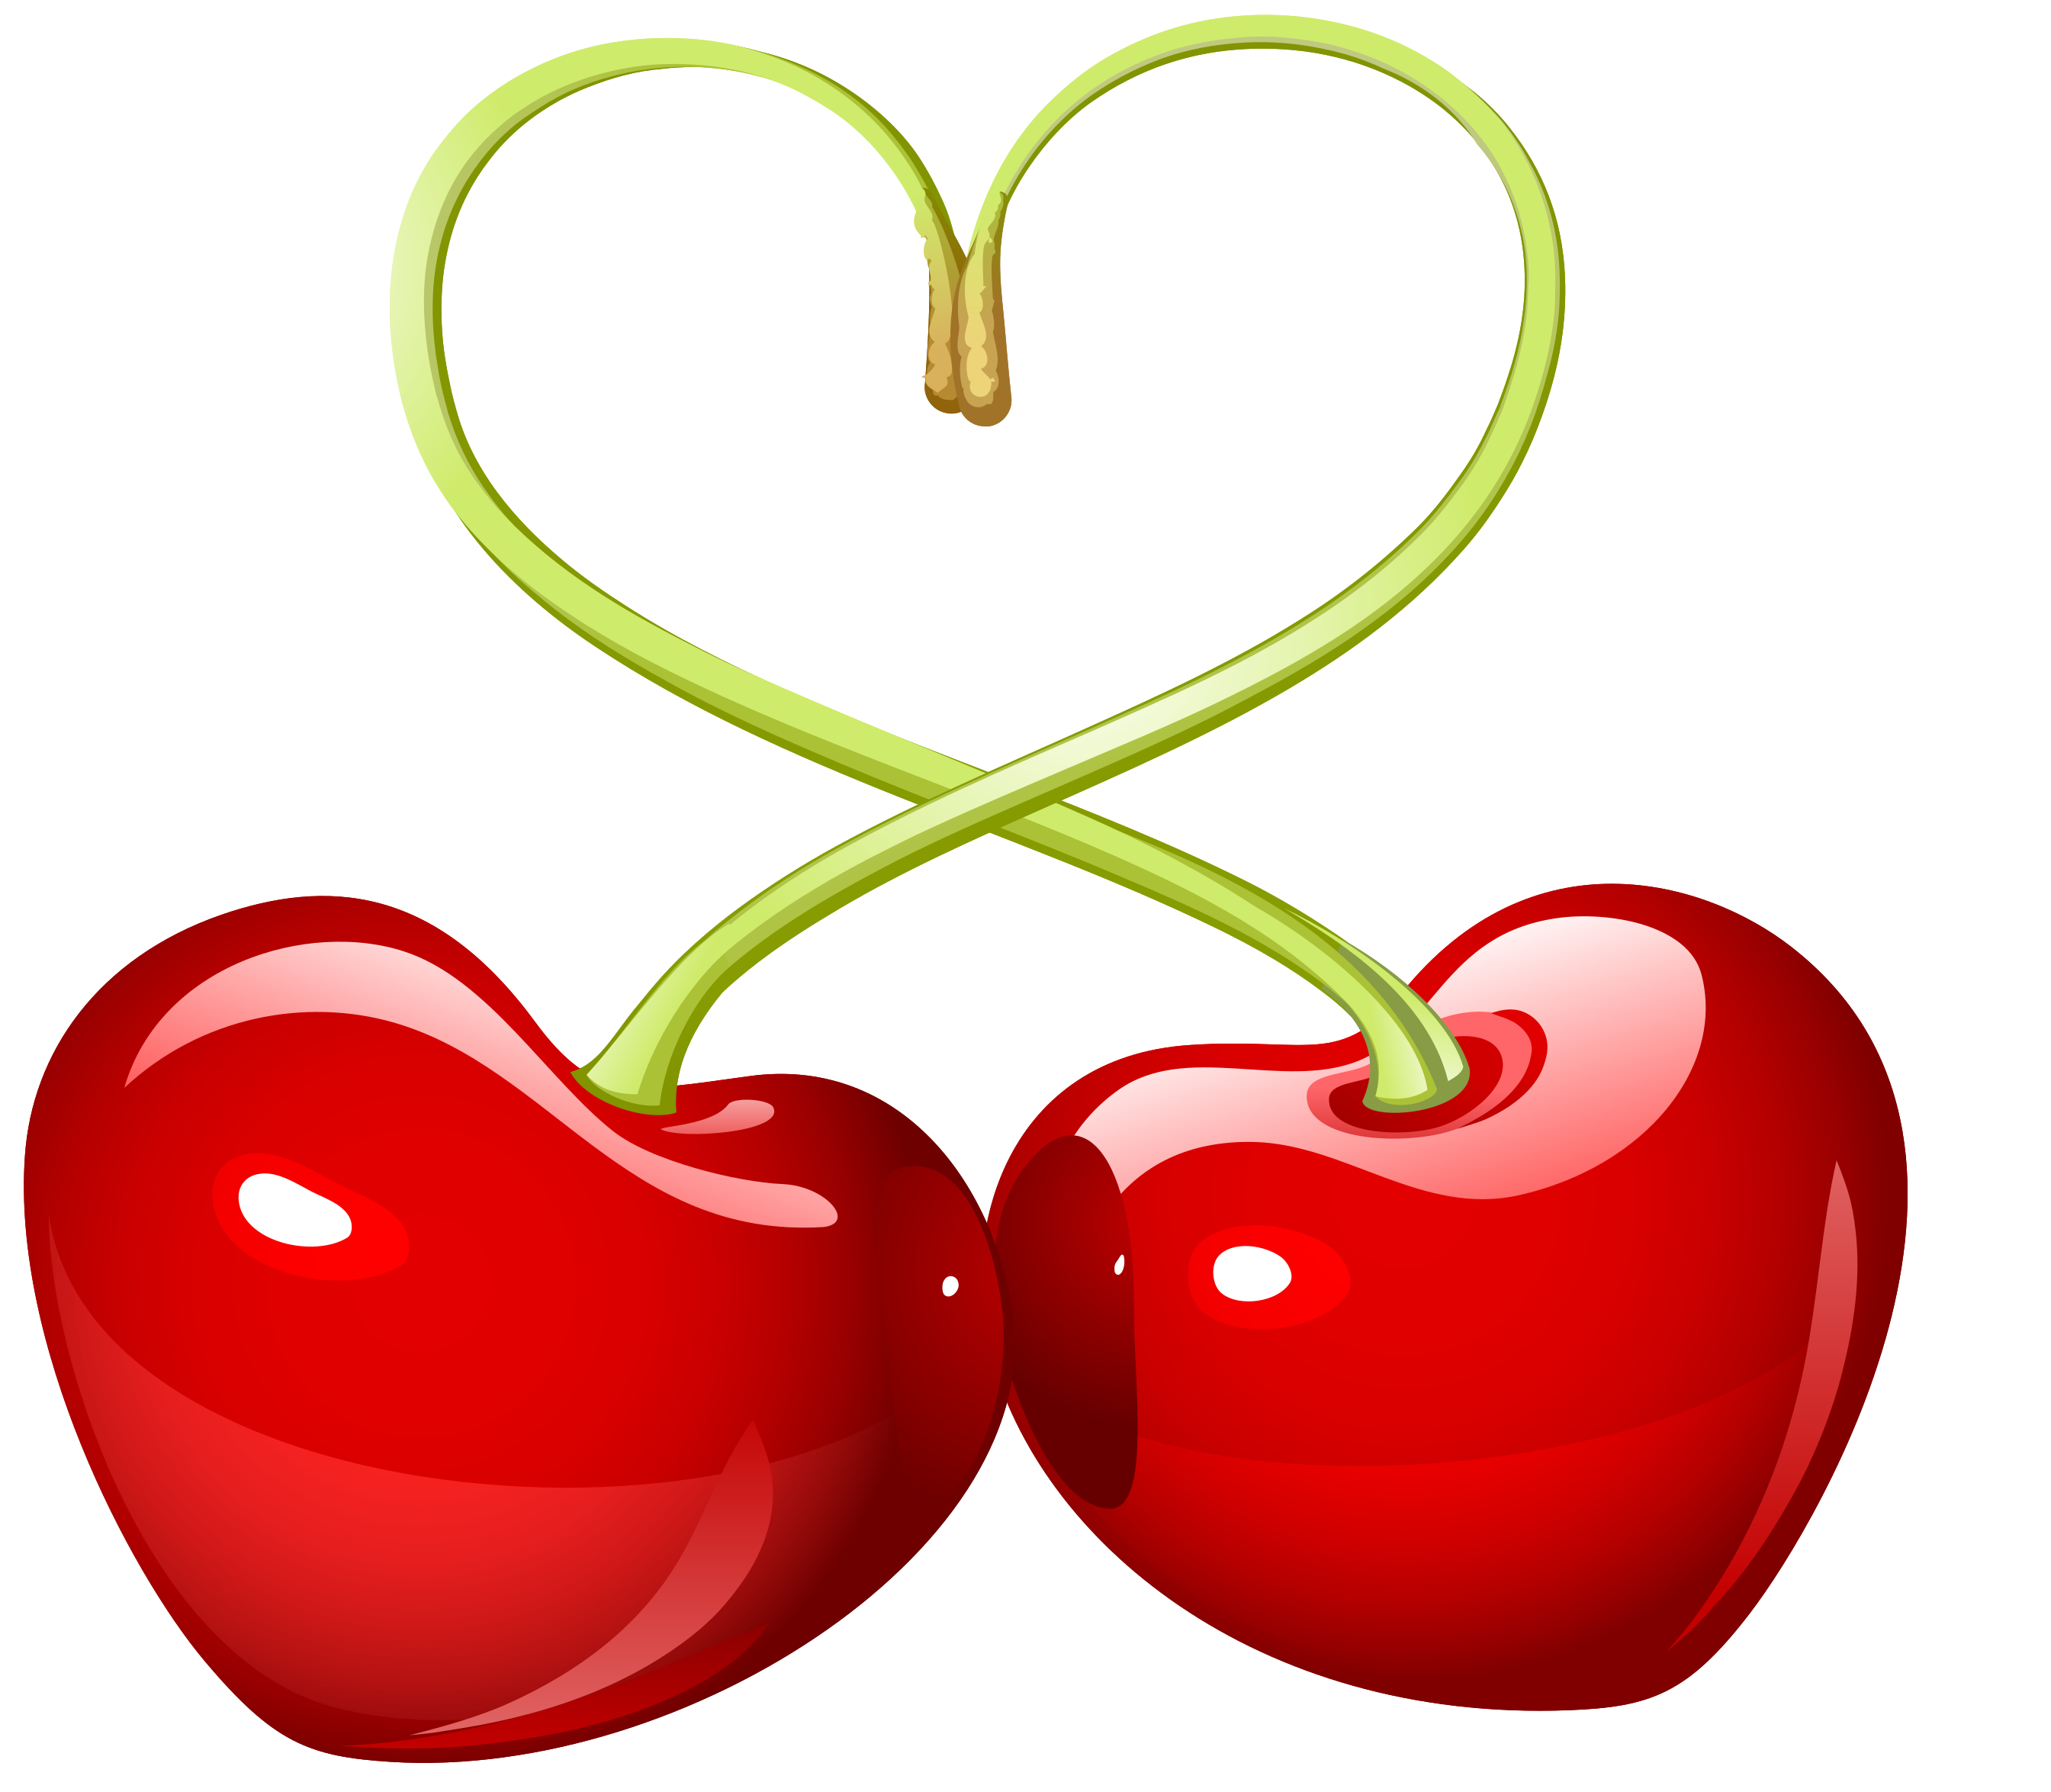 Download PNG image - Heart Fruit Transparent Background 